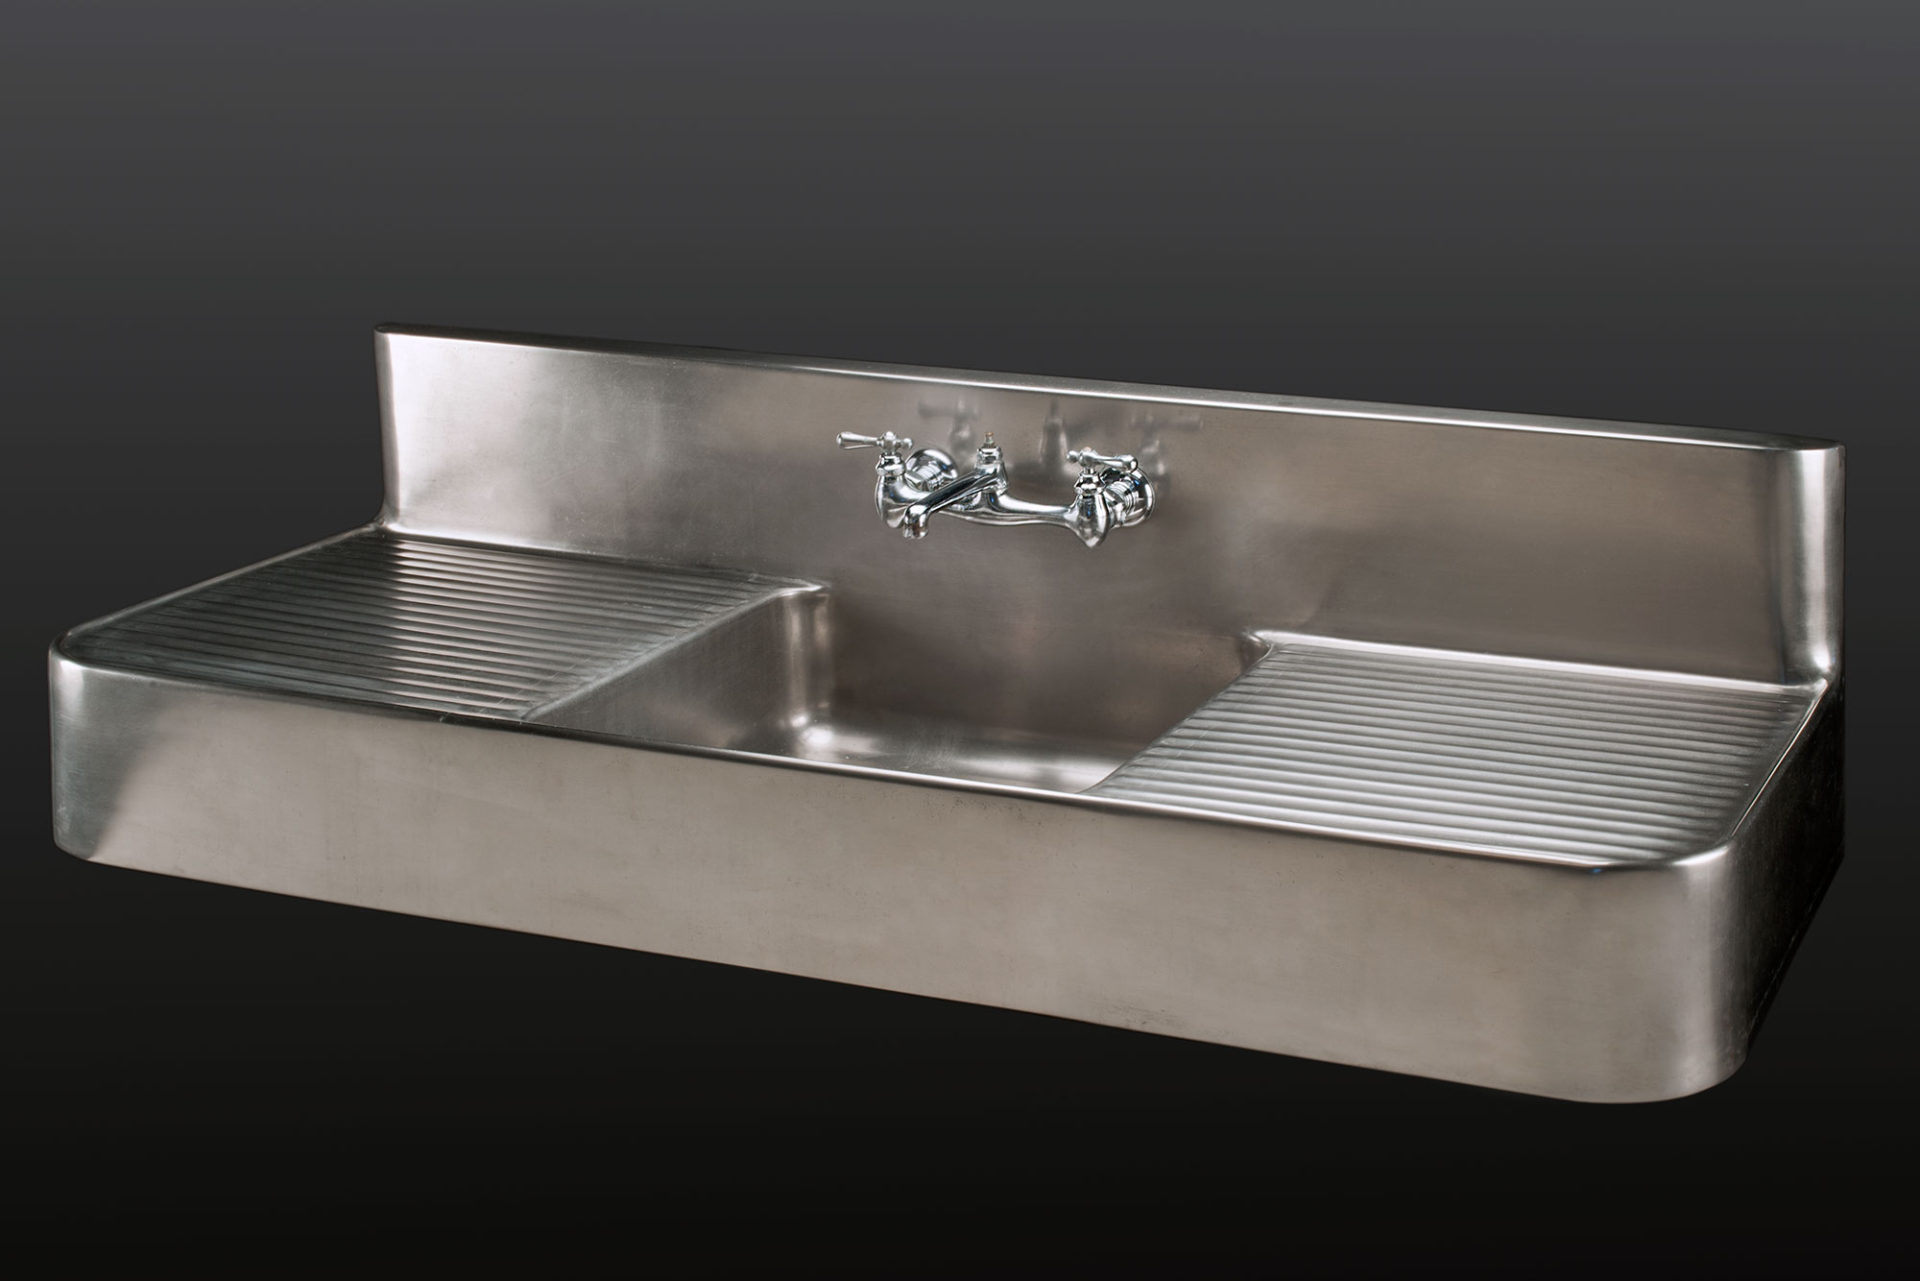 Large évier en métal avec plateaux de drainage de chaque côté de la cuve rectangulaire; poignées et robinets au centre du dosseret, lui aussi rectangulaire.